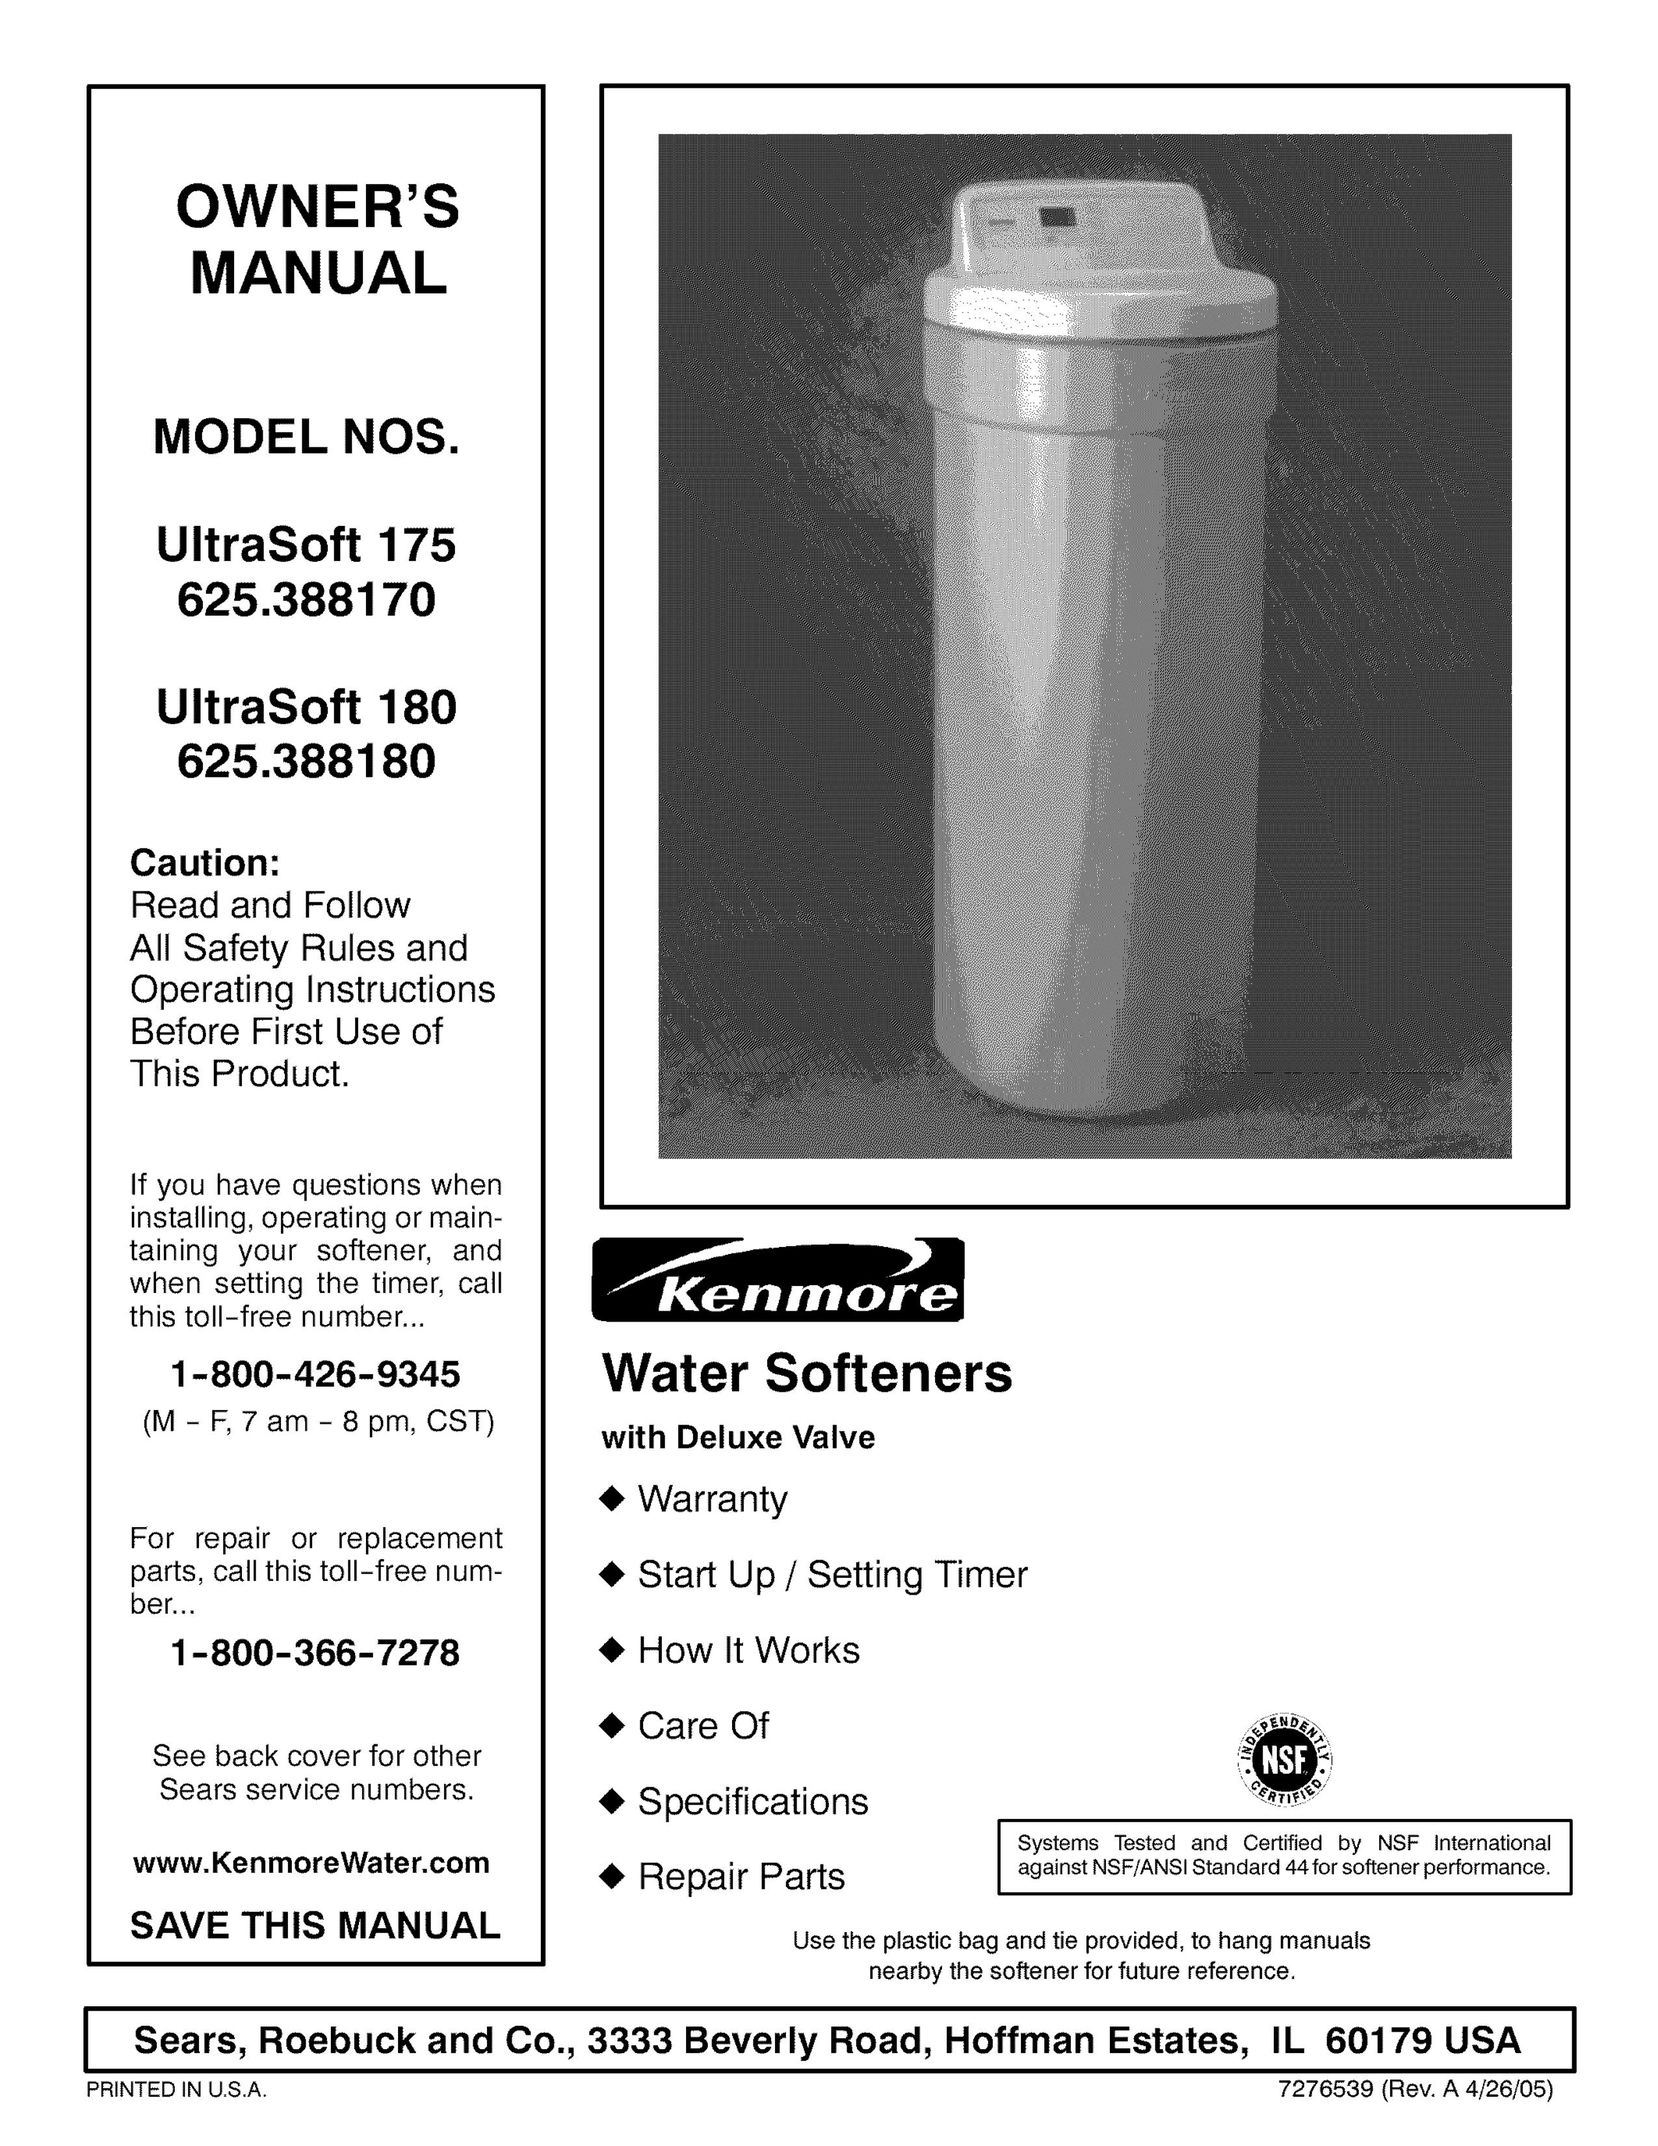 Kenmore 625.38817 Water System User Manual